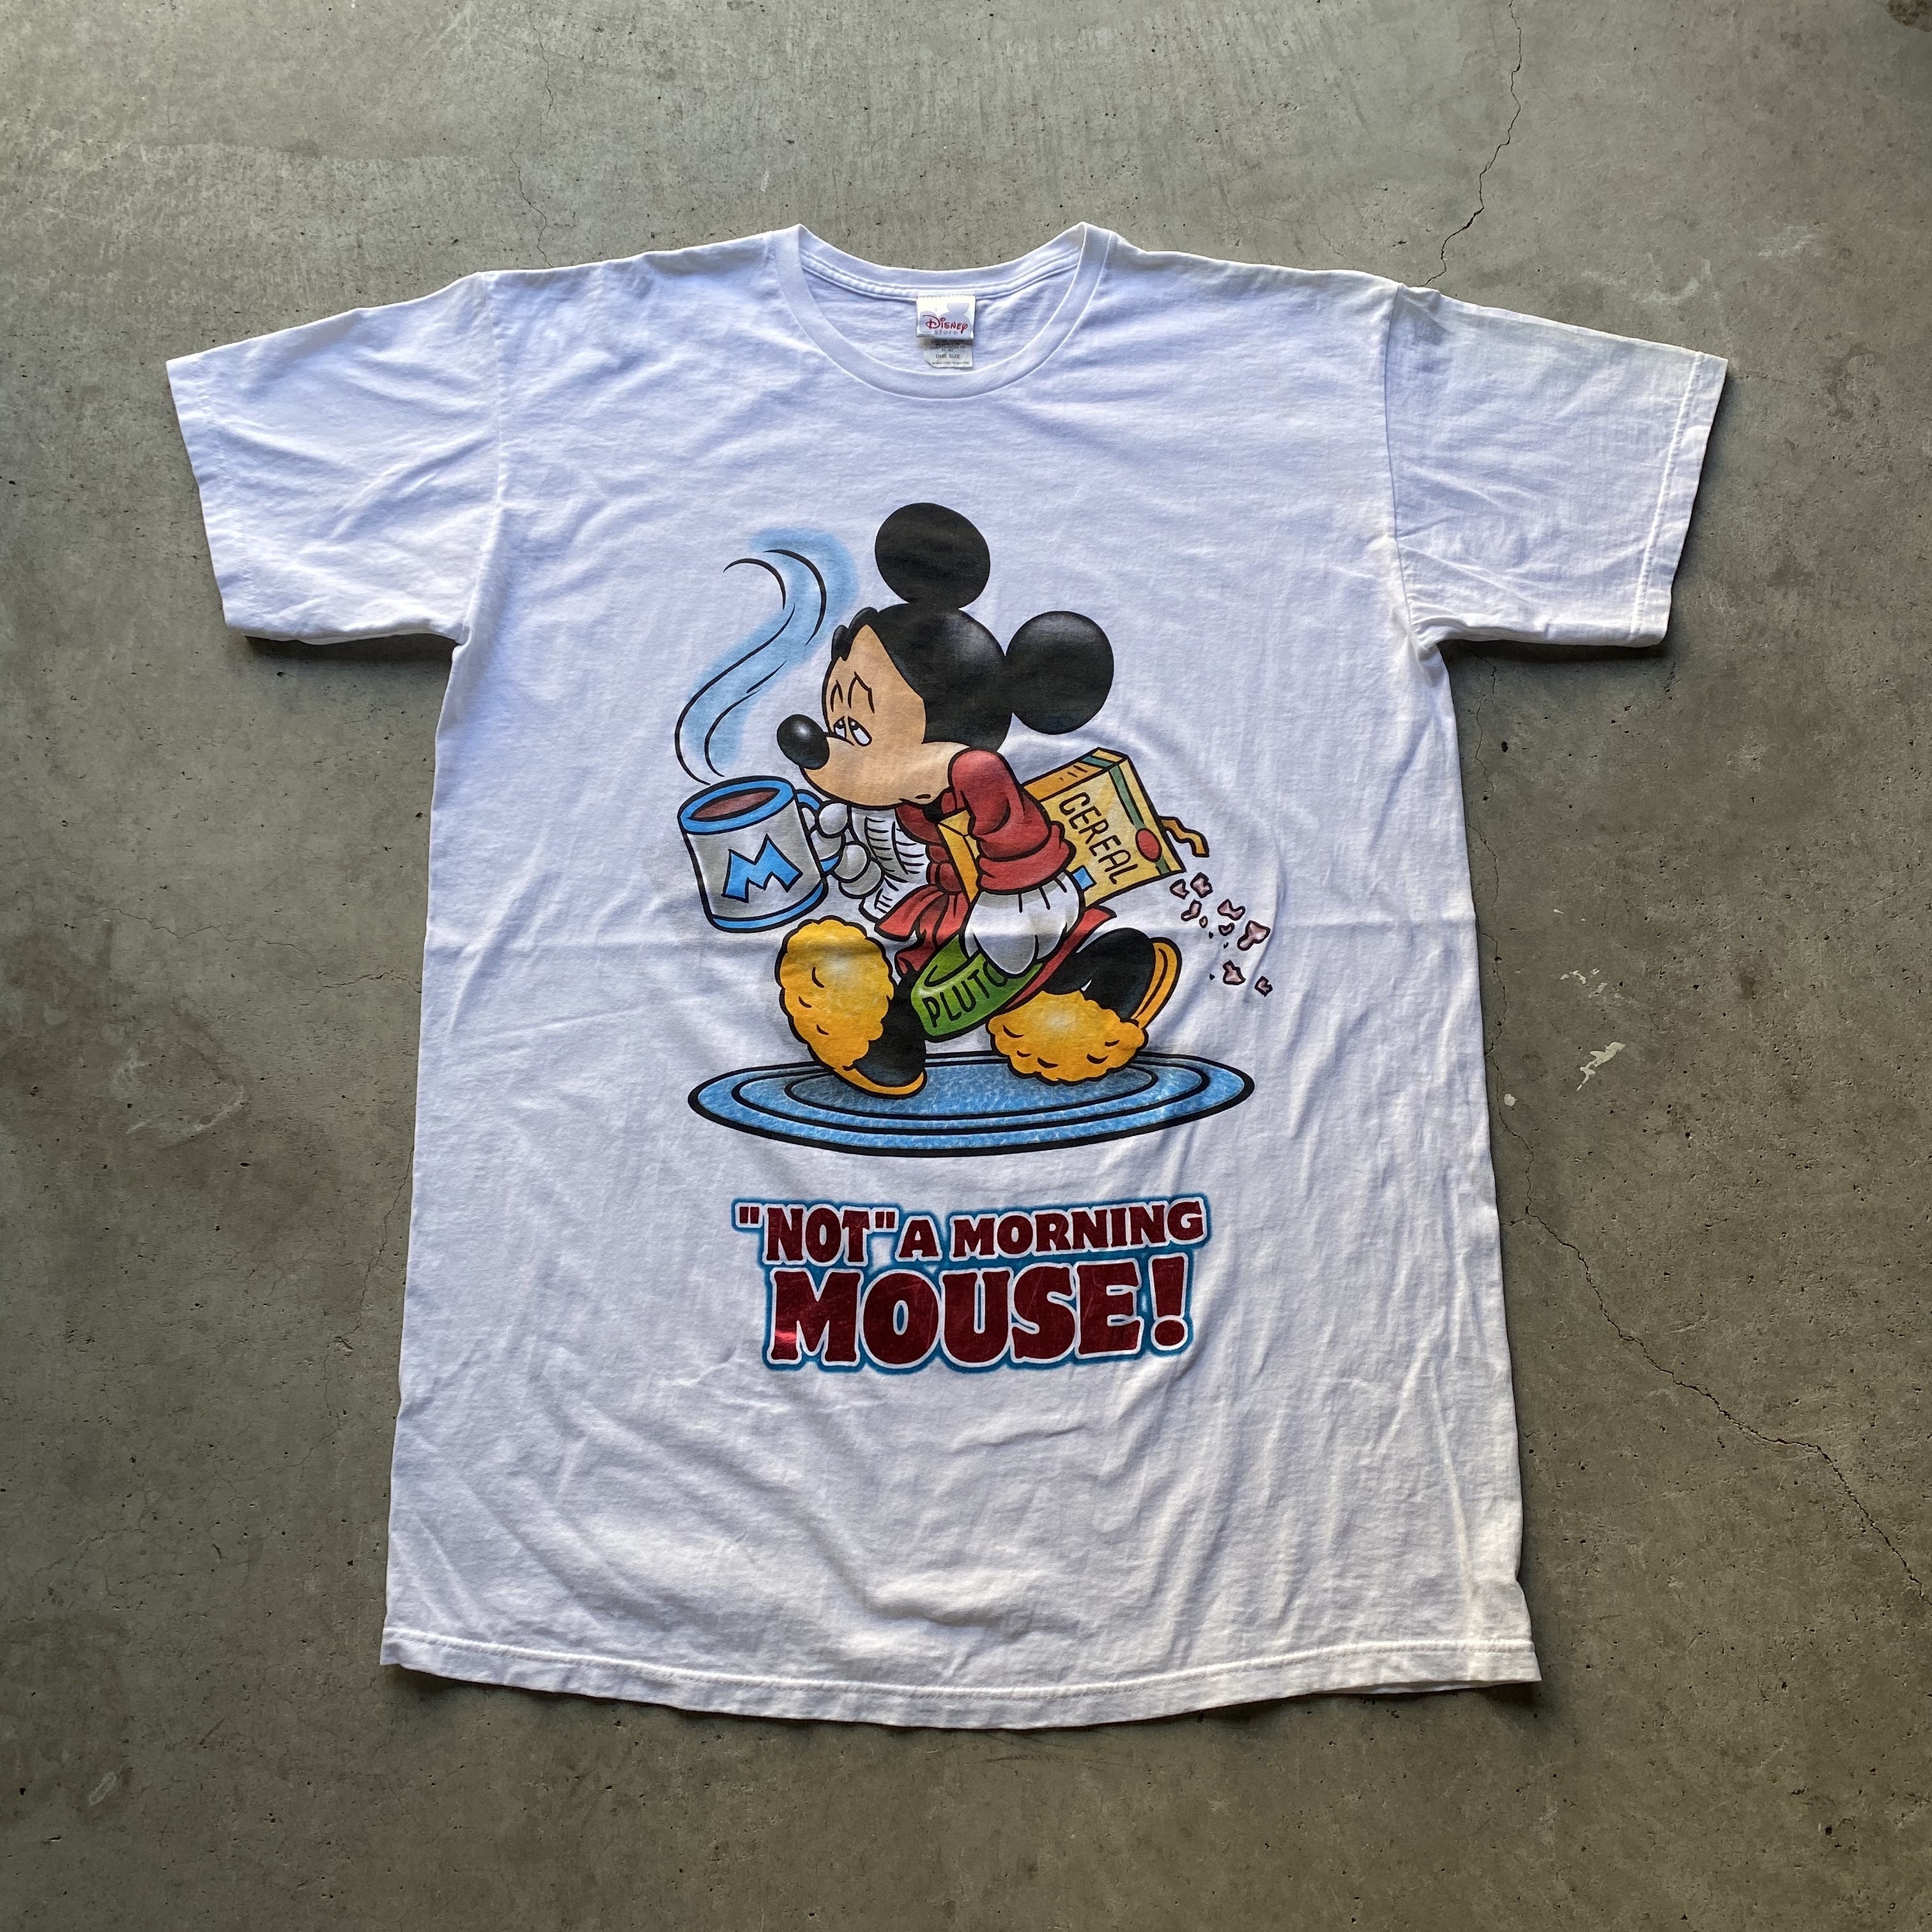 Disney ディズニー Mickey Mouse ミッキーマウス キャラクターtシャツ メンズ レディース 古着 Tシャツ Cave 古着屋 公式 古着通販サイト 夏物最大50 Off開催中